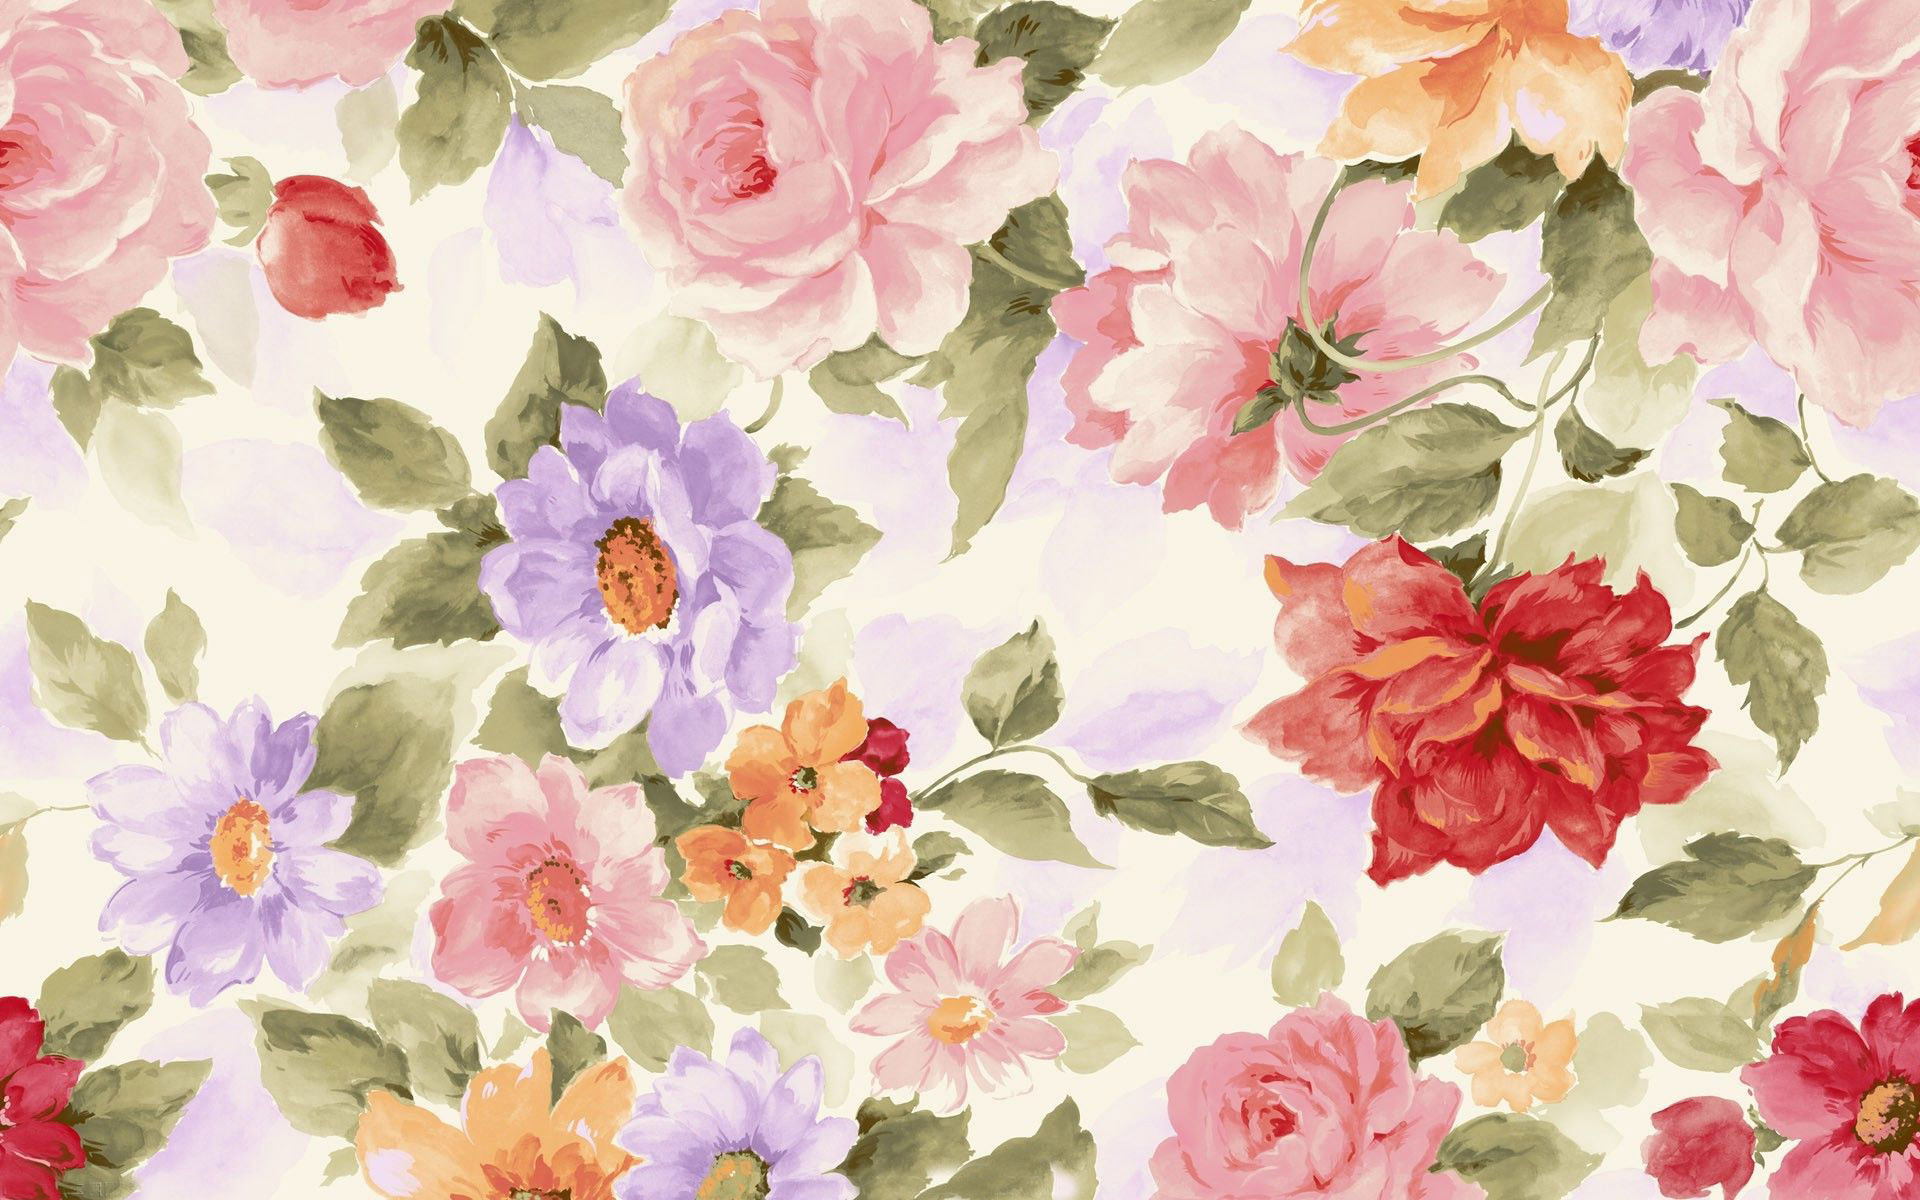 watercolour floral wallpaper,flower,watercolor paint,pink,floral design,pattern